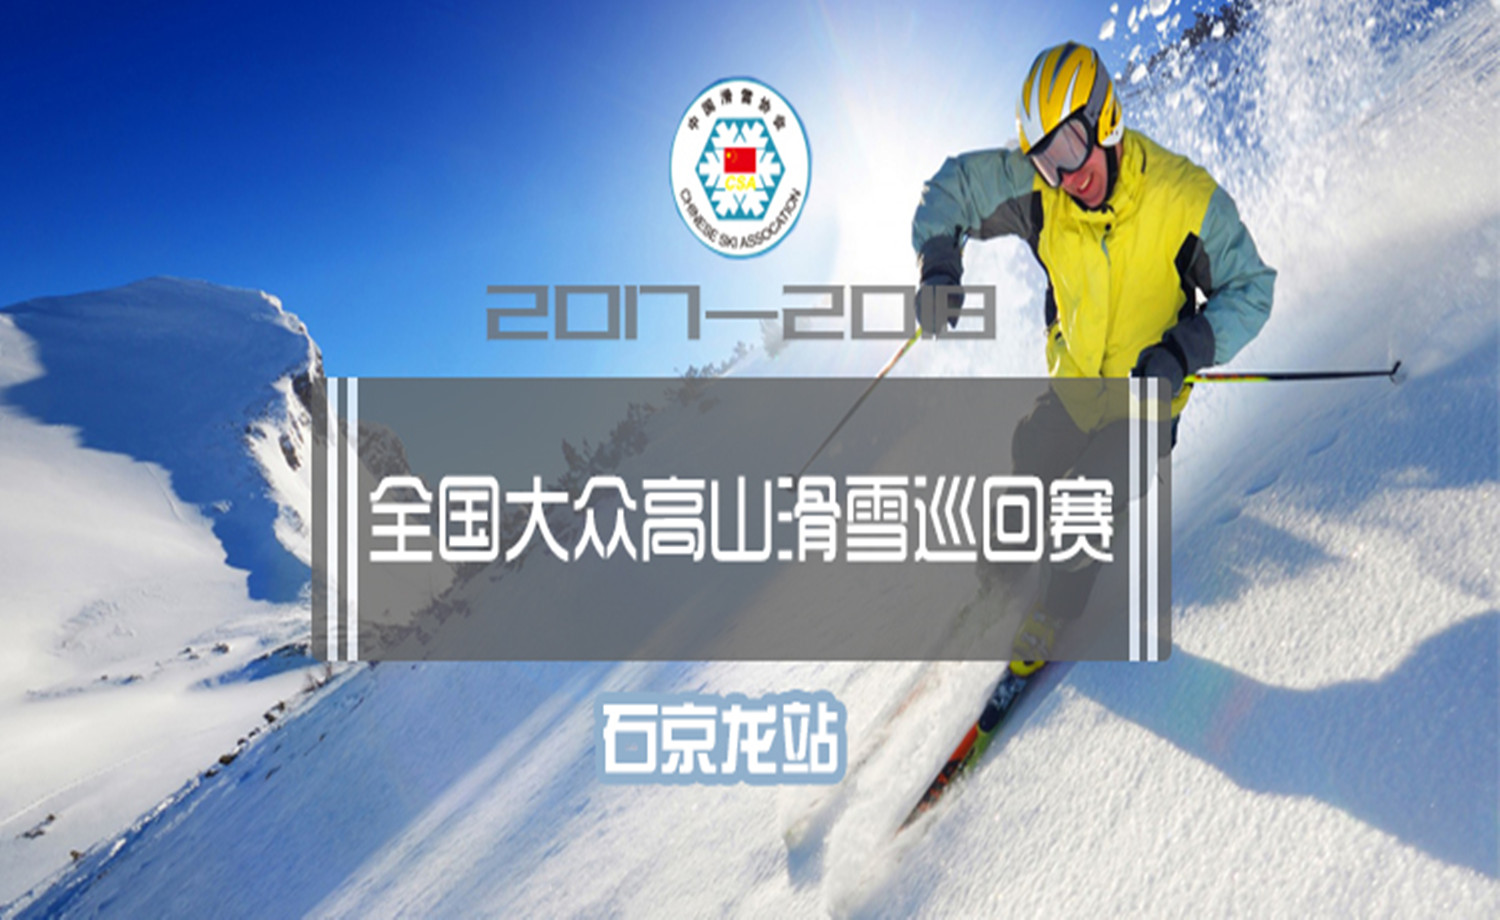 2017-2018年全国大众高山滑雪巡回赛-石京龙站